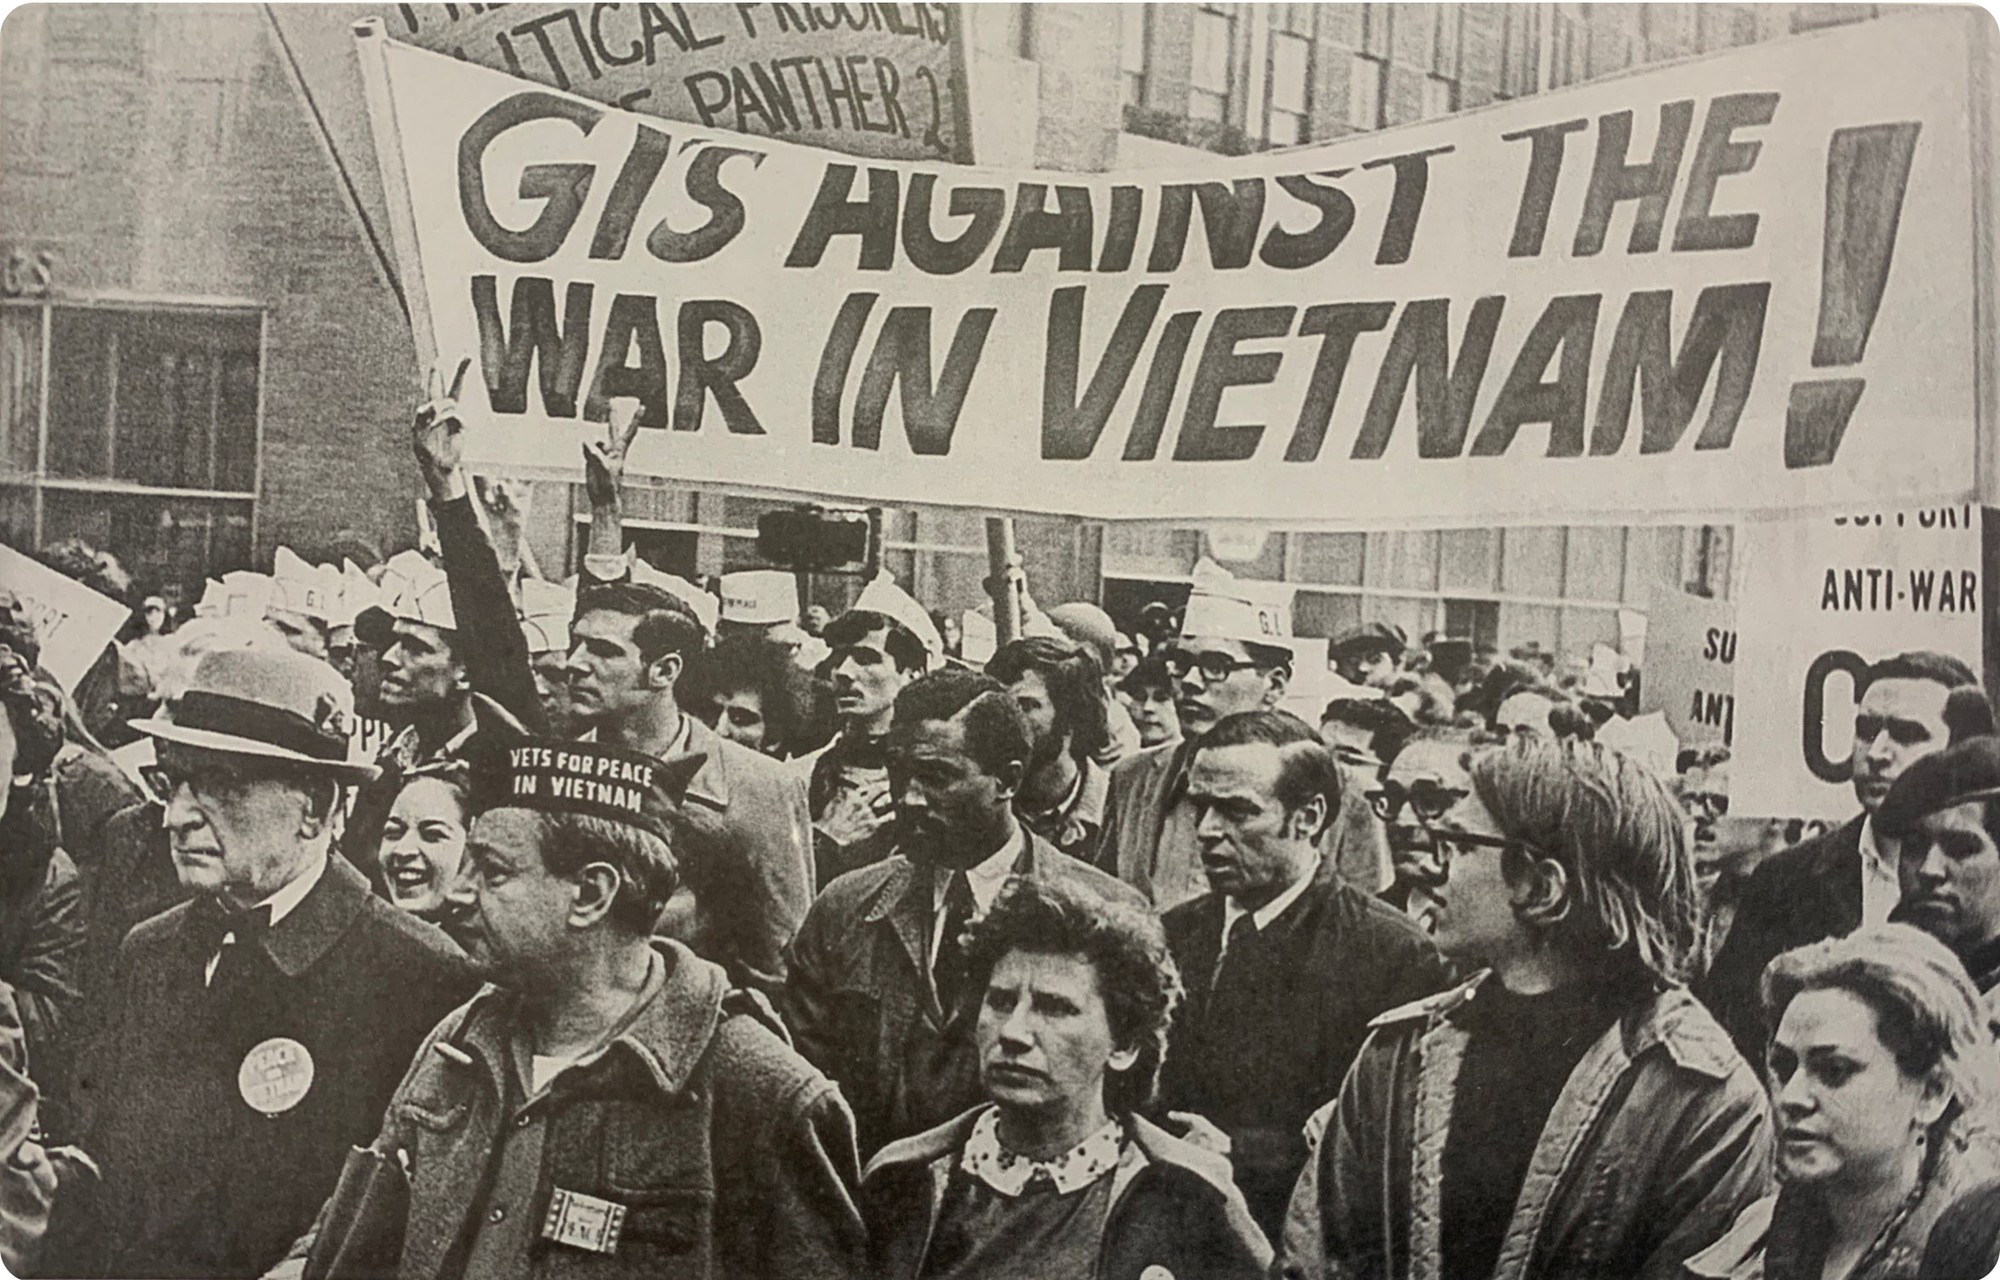 [Ảnh] Thế giới đoàn kết, ủng hộ Việt Nam trong cuộc đấu tranh chính nghĩa ảnh 5